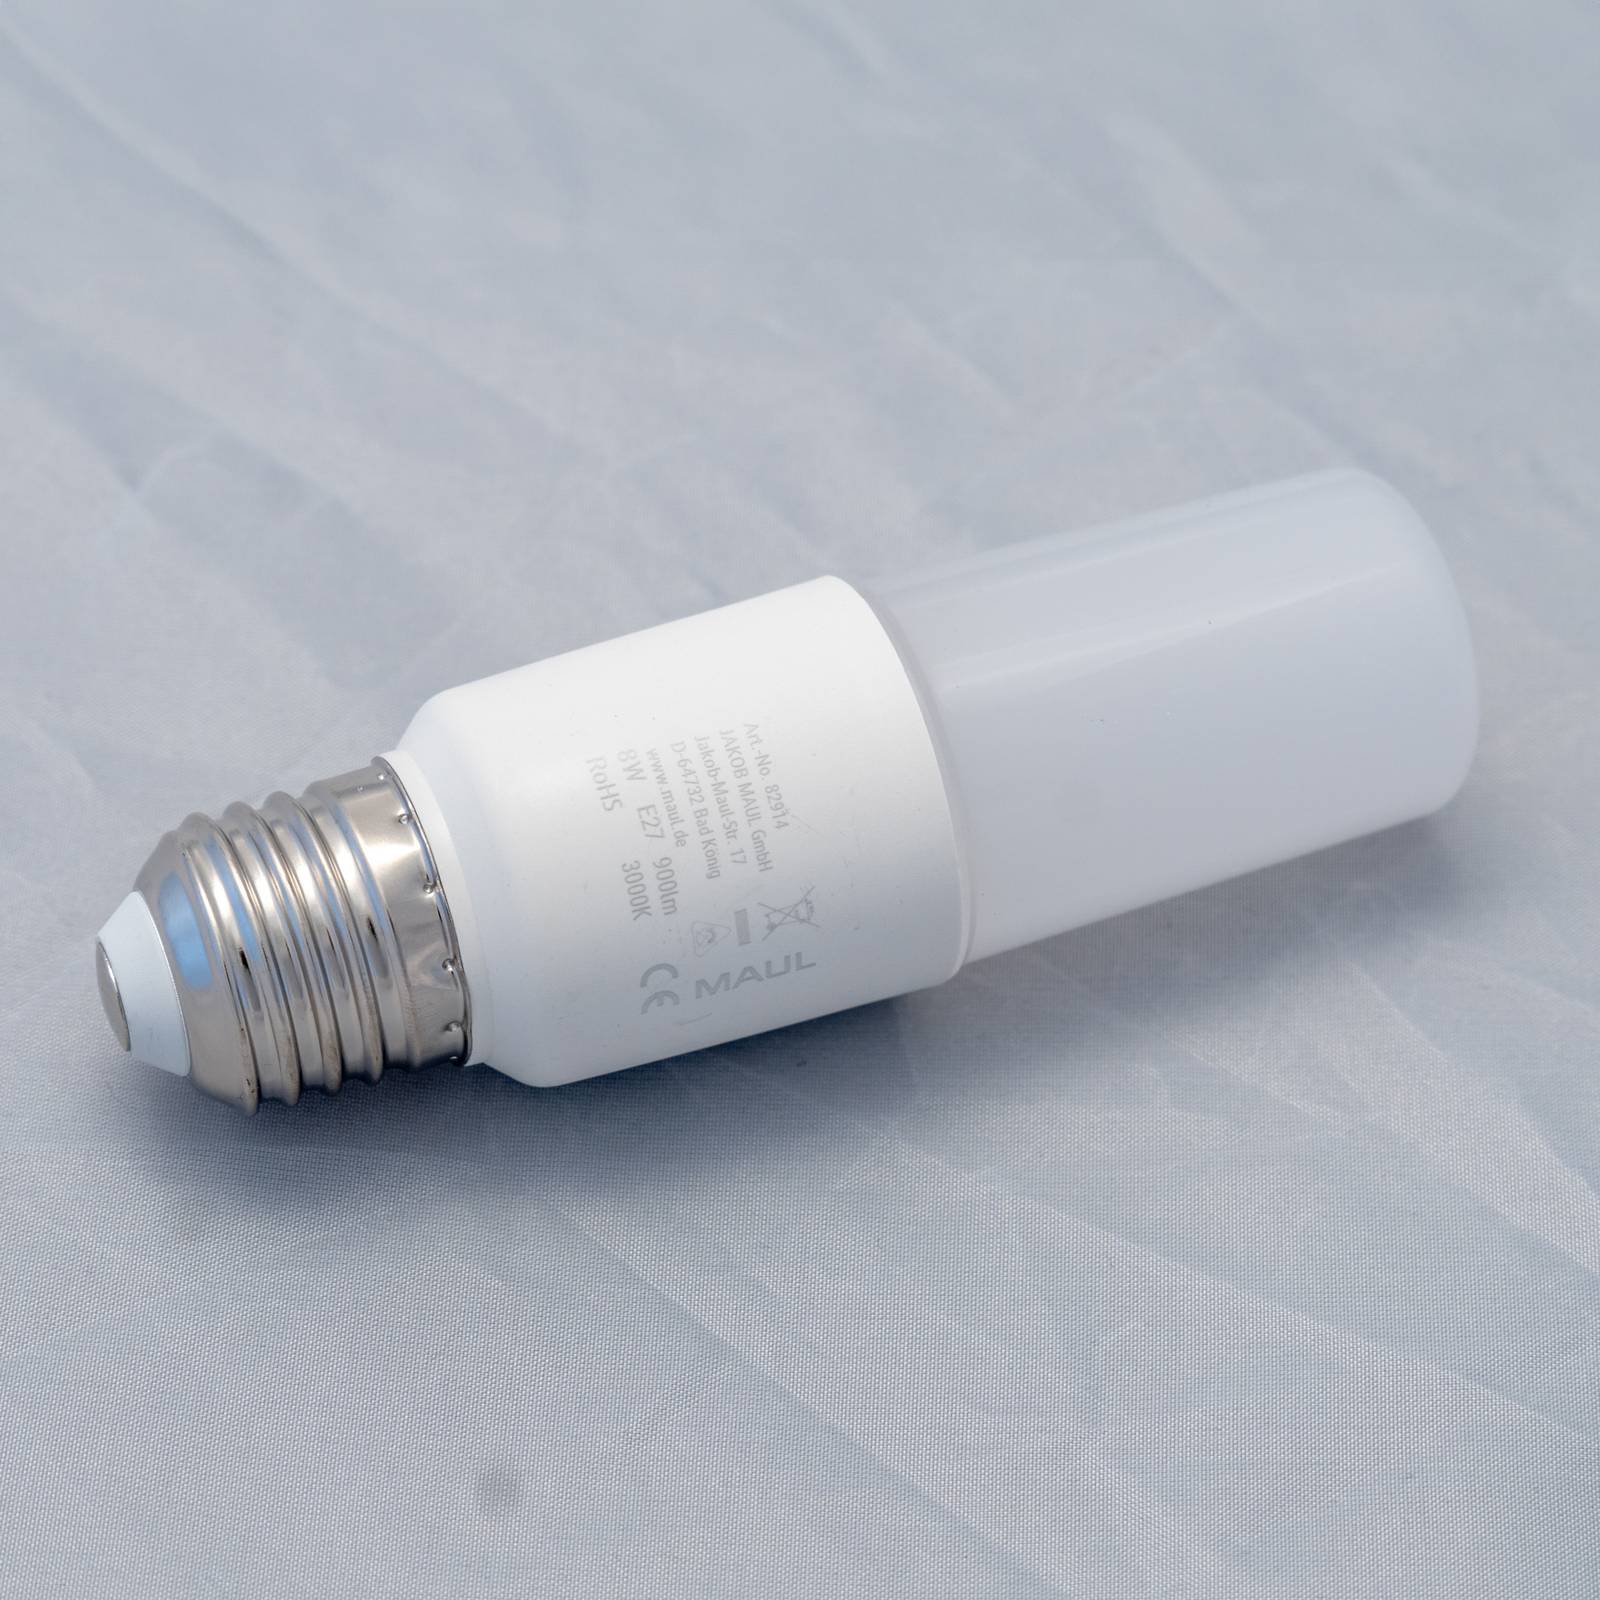 Maul LED žárovka, matná, E27, 8 W, 3000 K, 900 lm